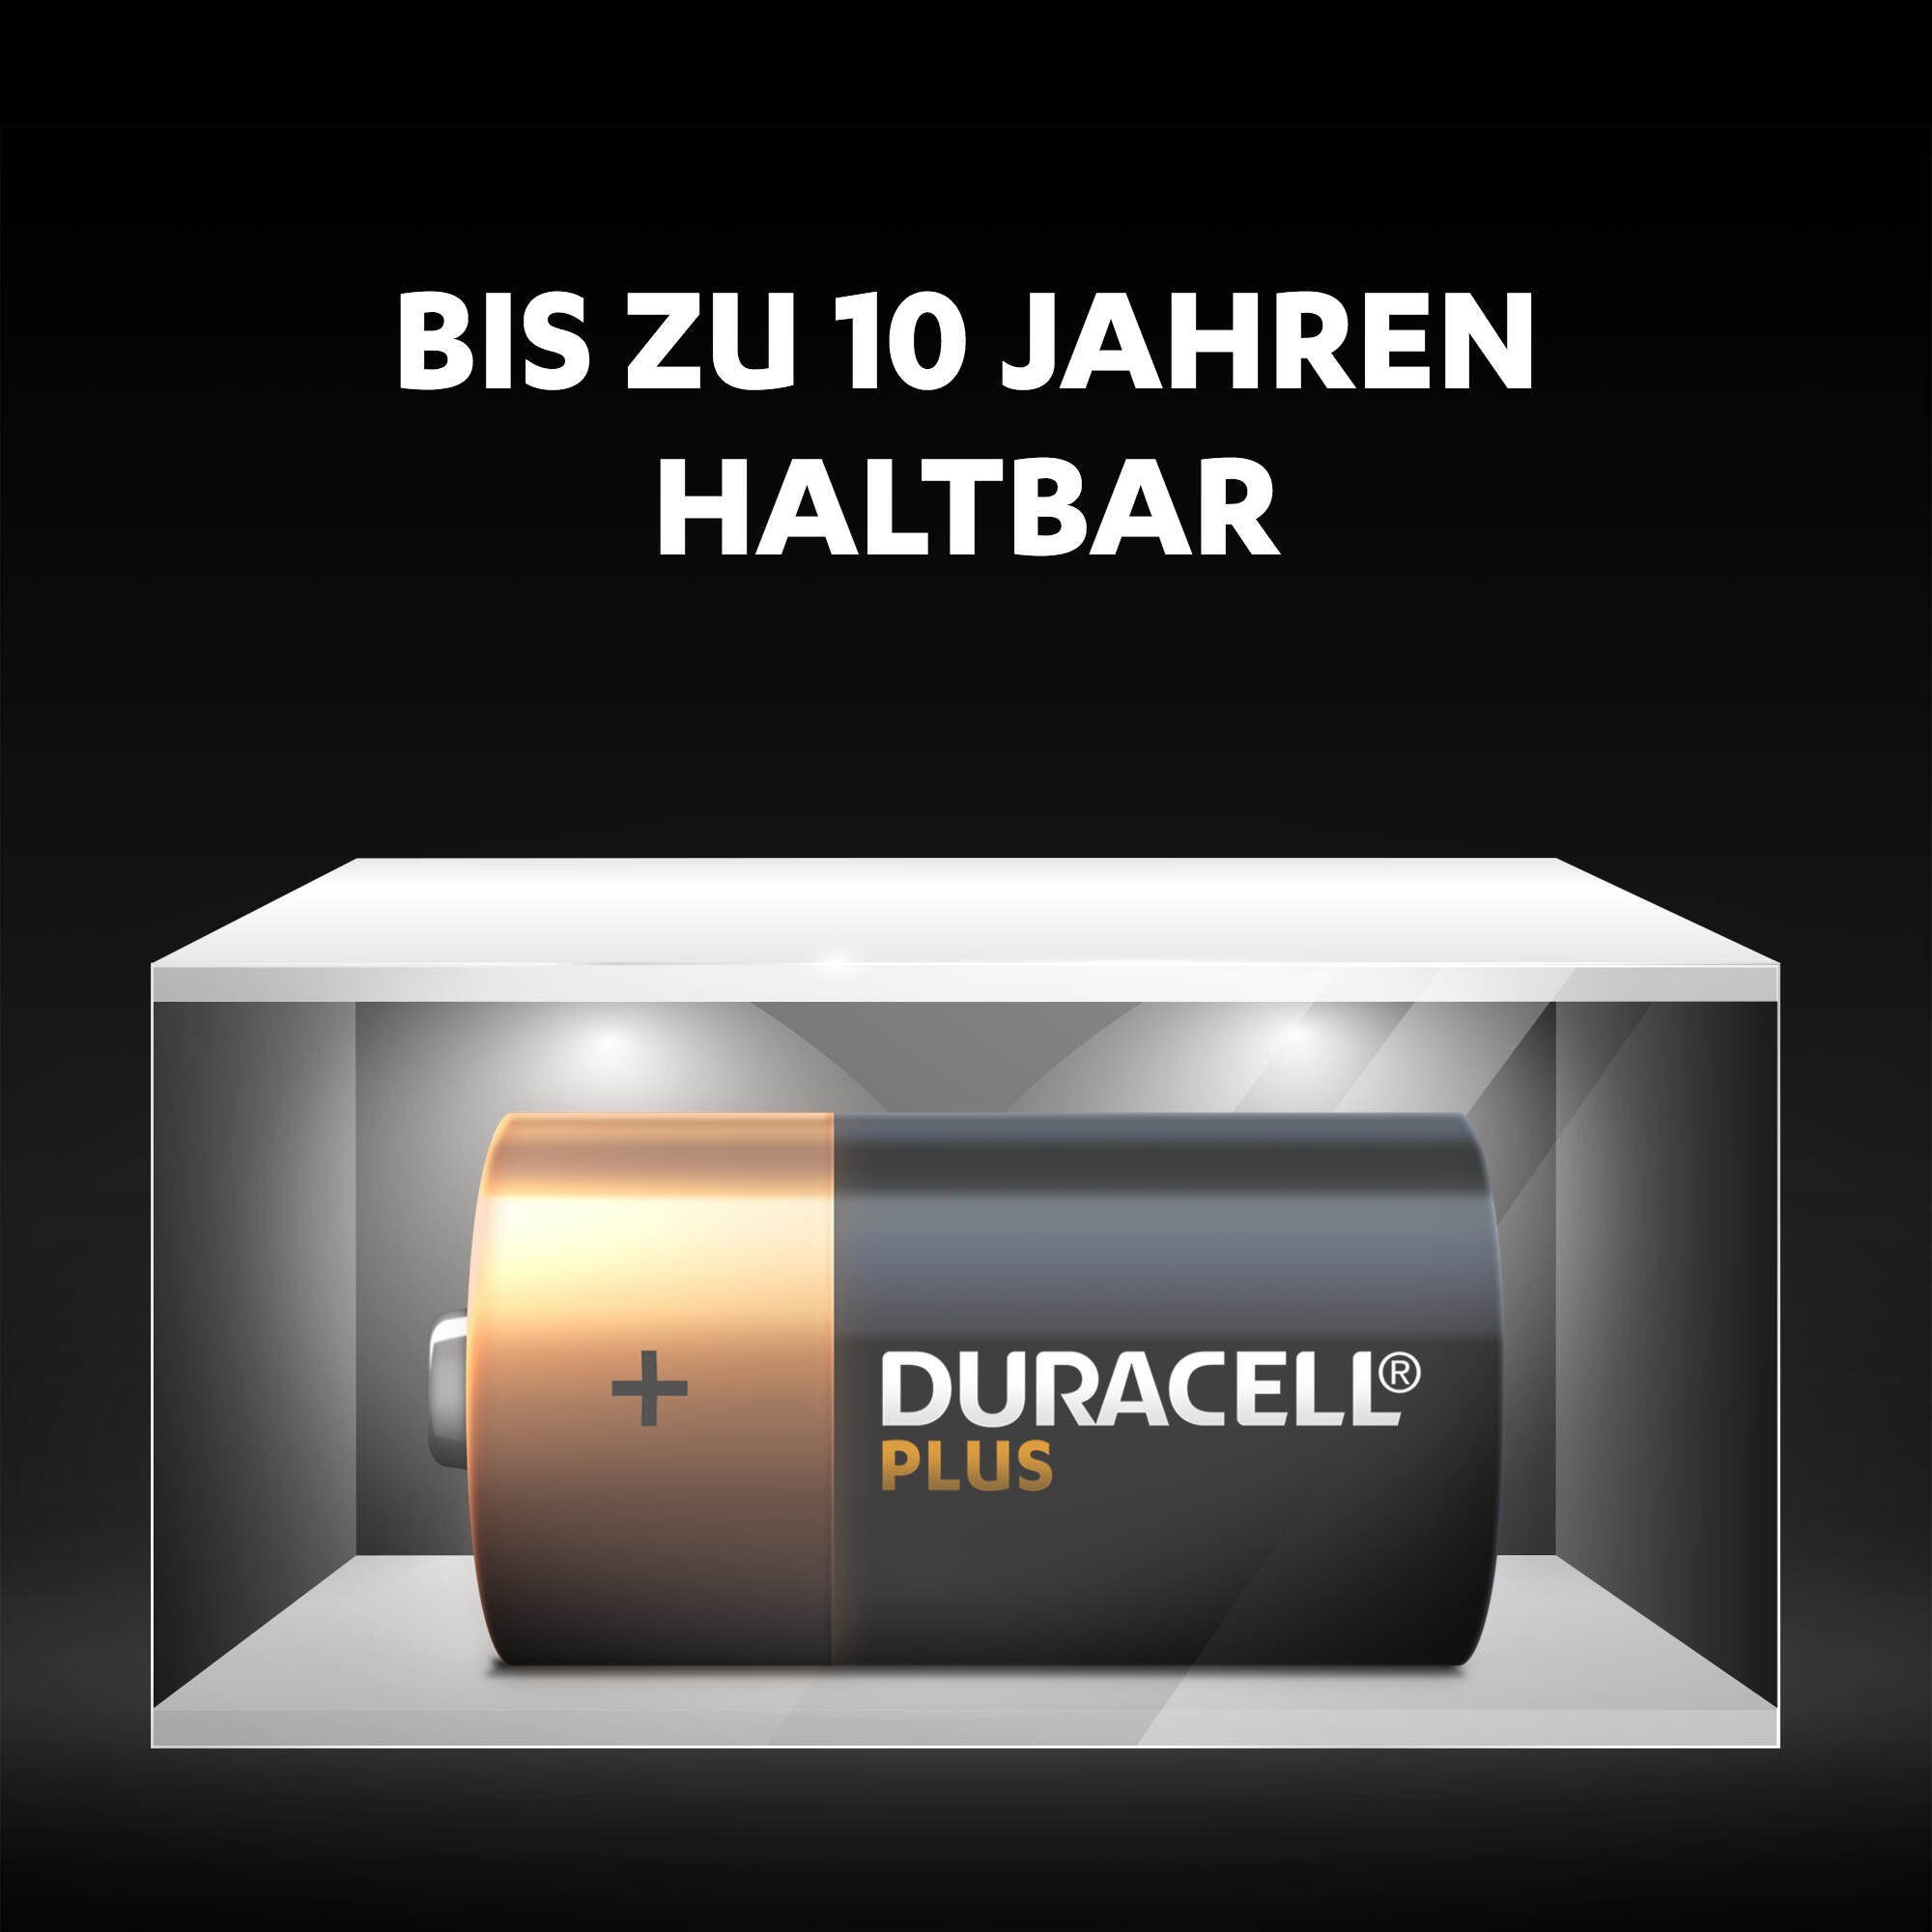 Pack 2er (2 Plus LR14 Duracell Batterie, St)